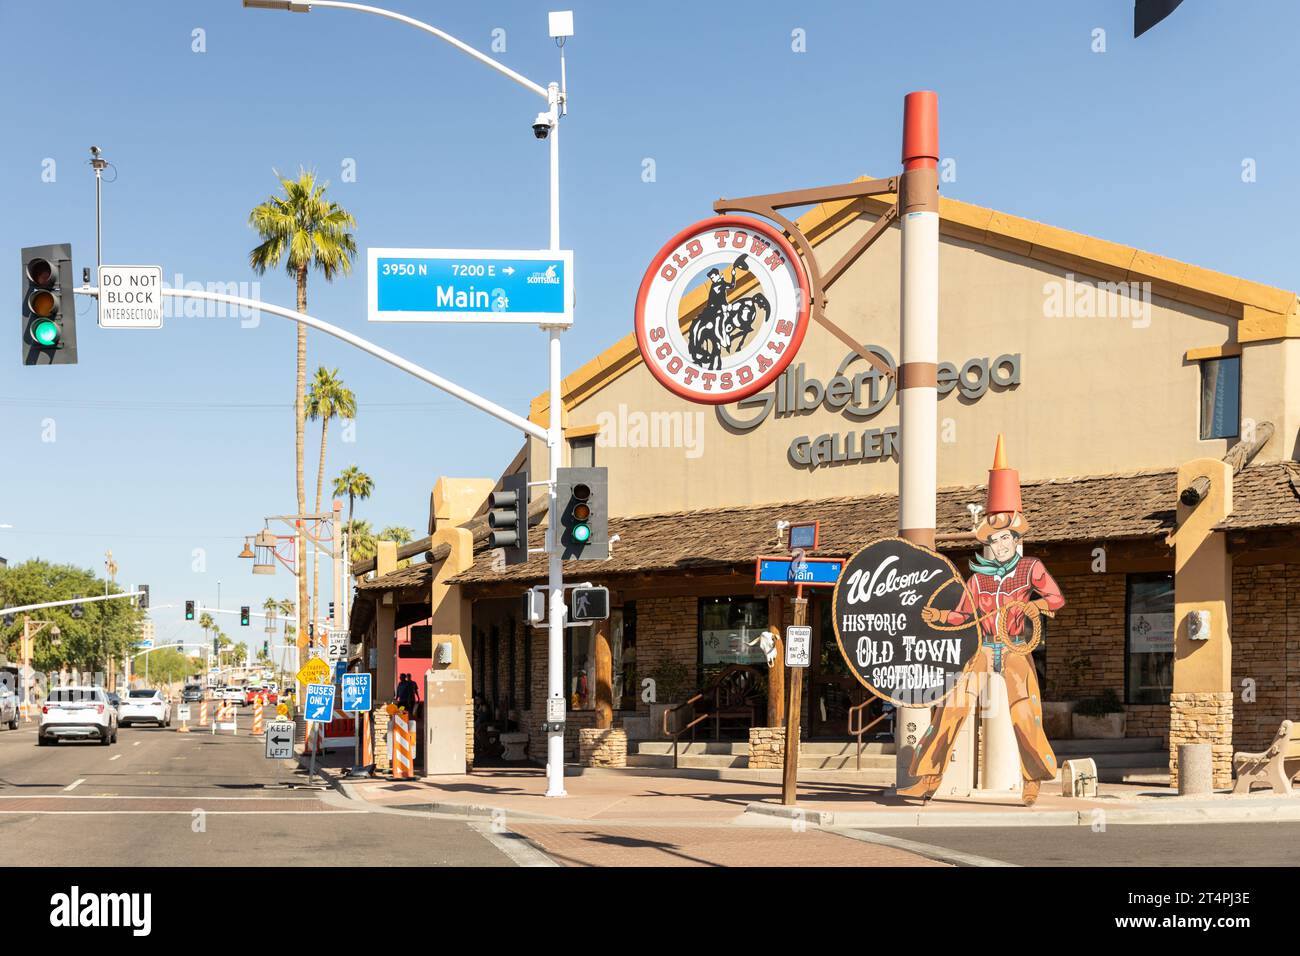 La vieille ville de Scottsdale est célèbre pour ses boutiques, ses galeries d'art, ses restaurants, ses bars et ses clubs avec son panneau emblématique situé le long de chaque rue. Banque D'Images